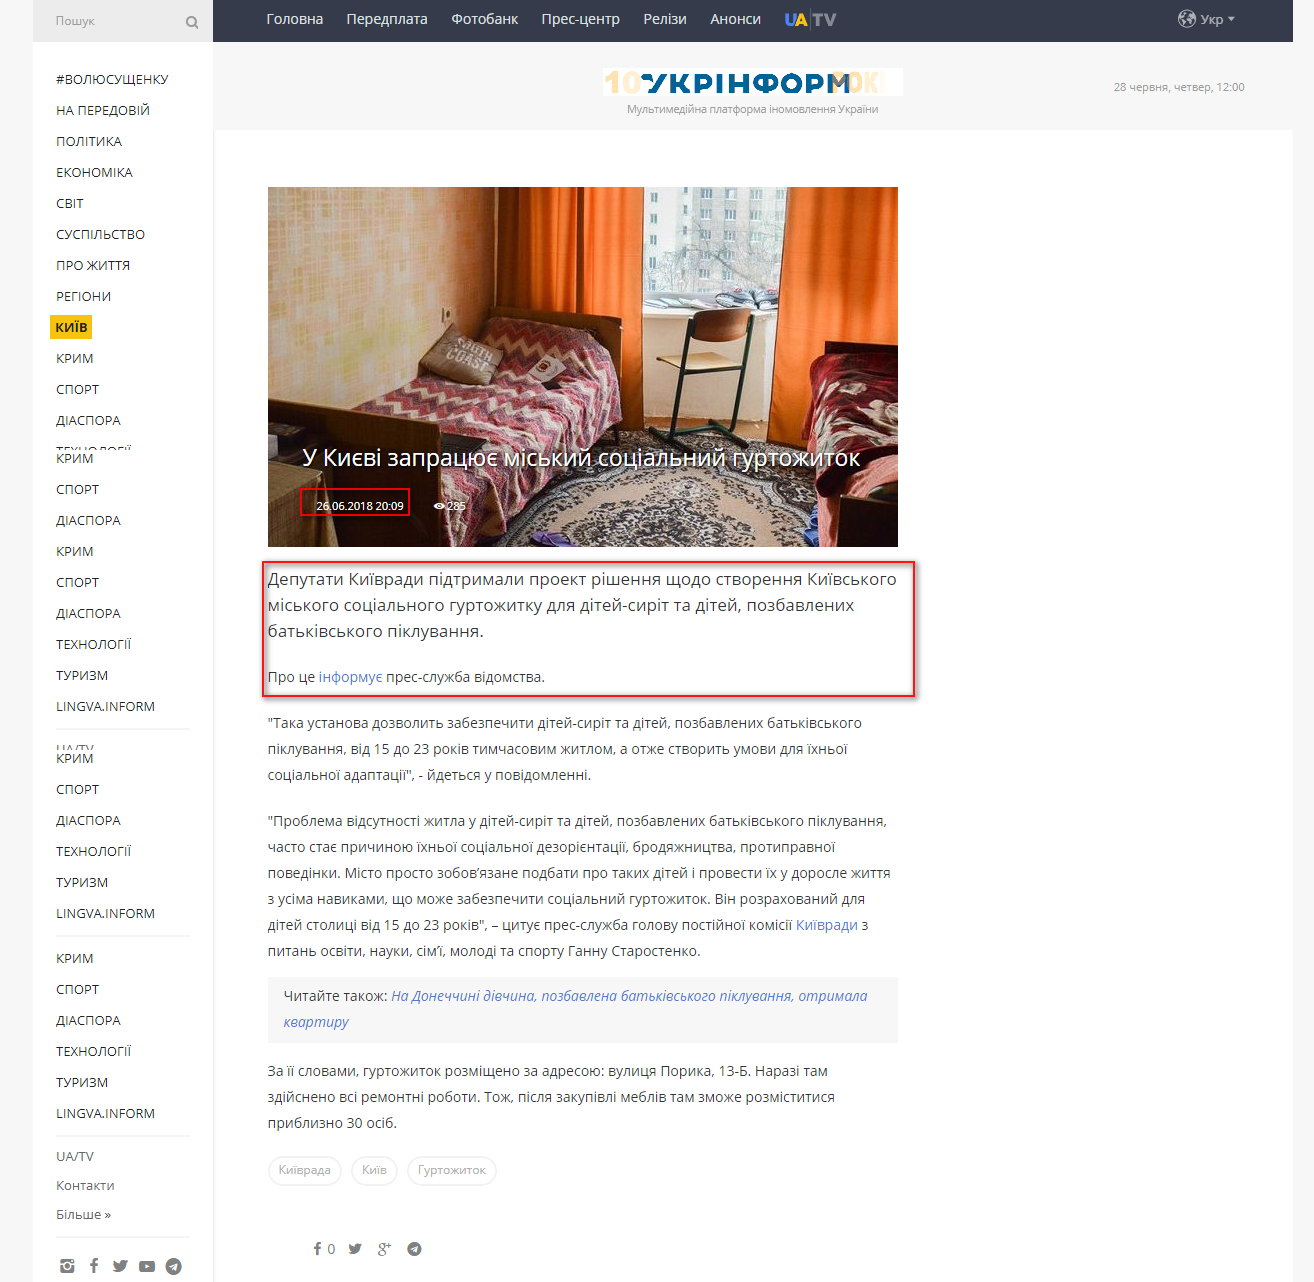 https://www.ukrinform.ua/rubric-kyiv/2488344-u-kievi-zapracue-miskij-socialnij-gurtozitok.html